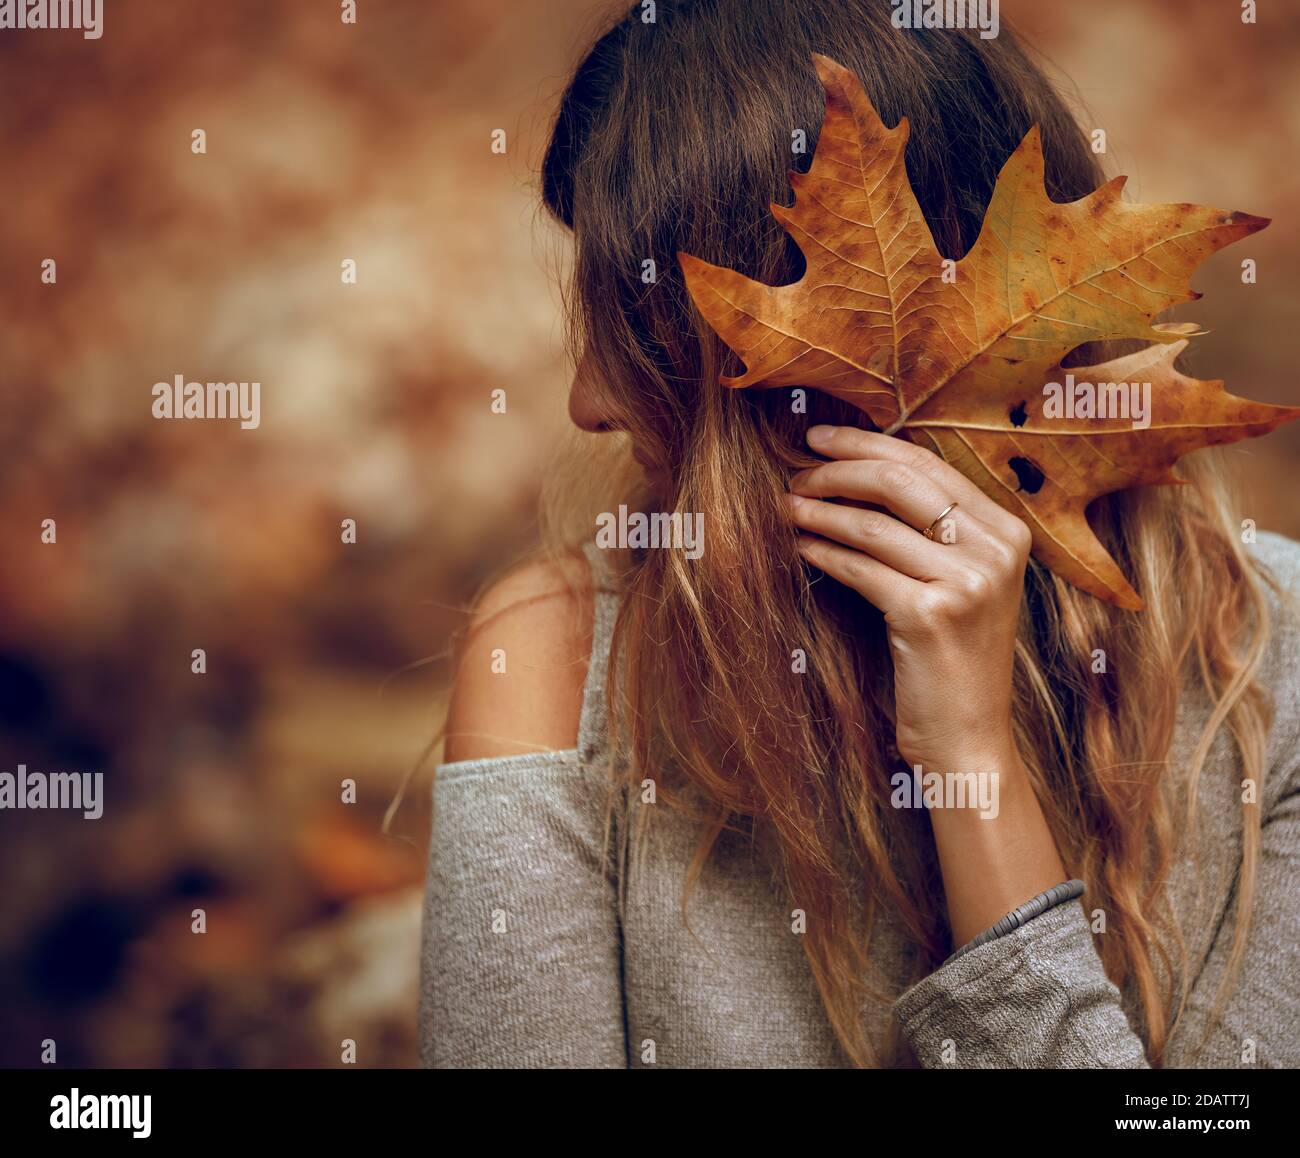 Schönes junges Model posiert im Herbstpark. Deckt die Vorderseite mit trockenem Ahornblatt ab. Schönheit der Natur im Herbst. Stockfoto